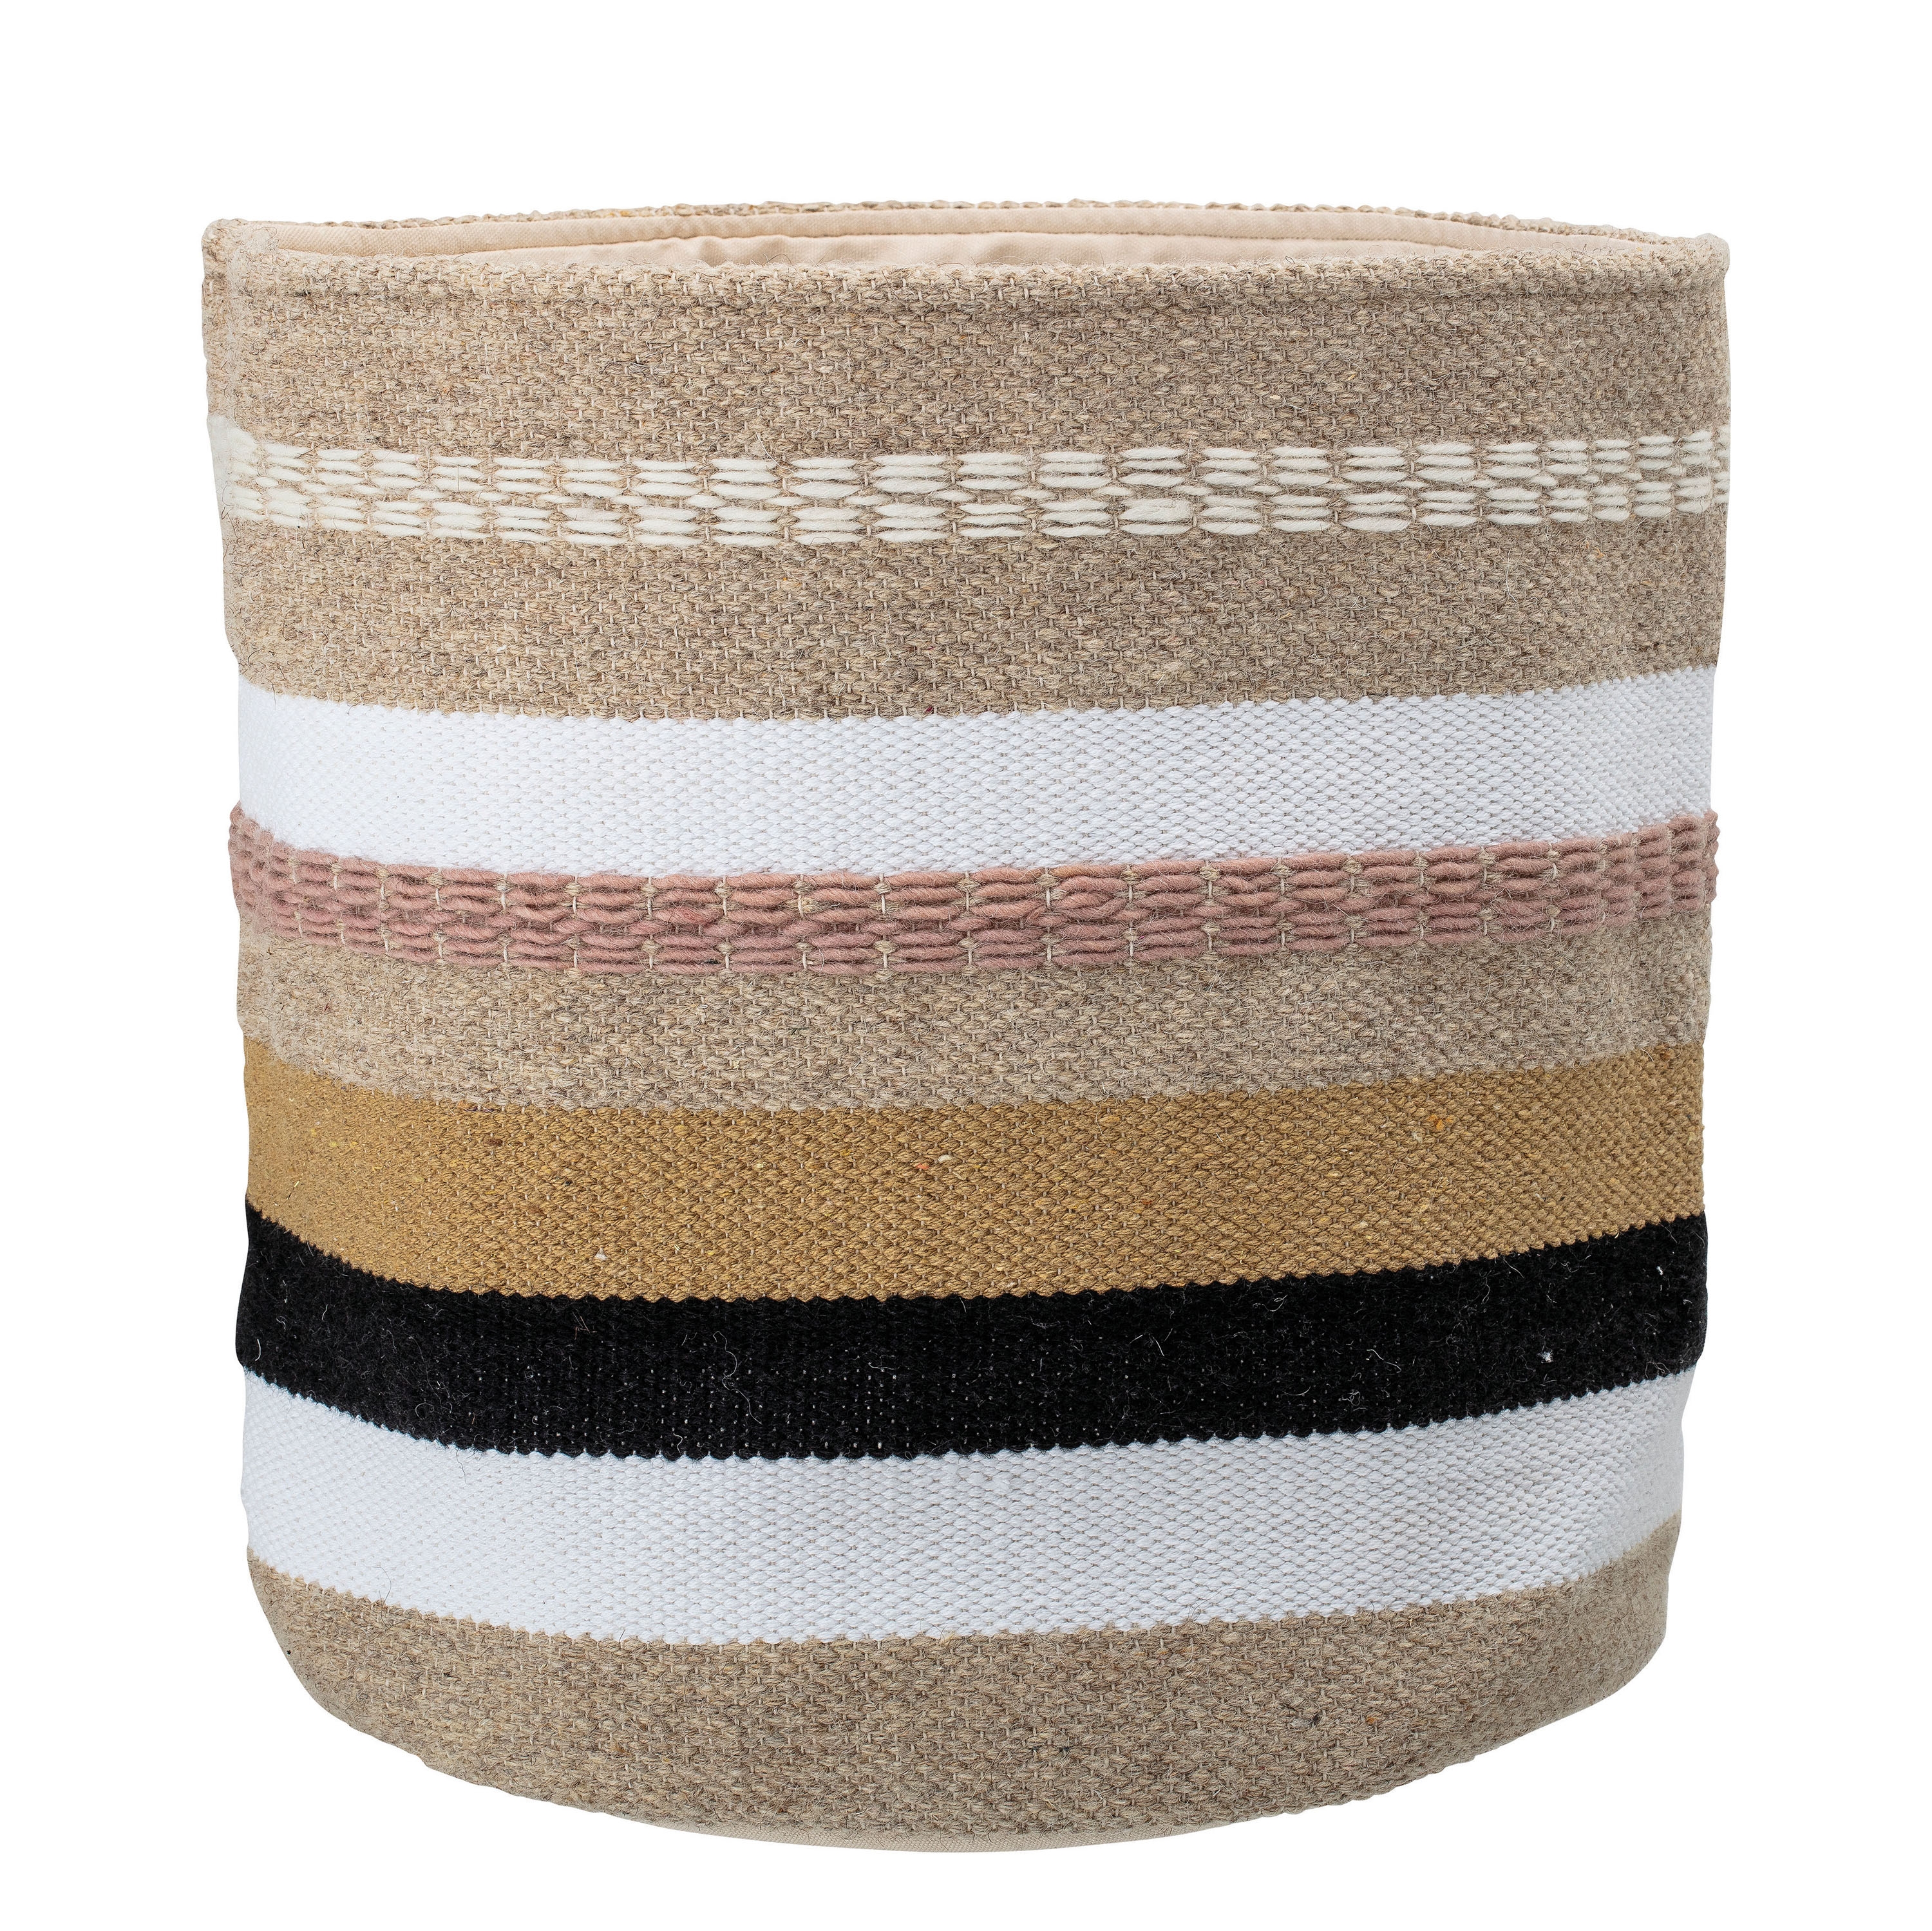 Striped Fabric Basket, Pink & Tan - Image 0